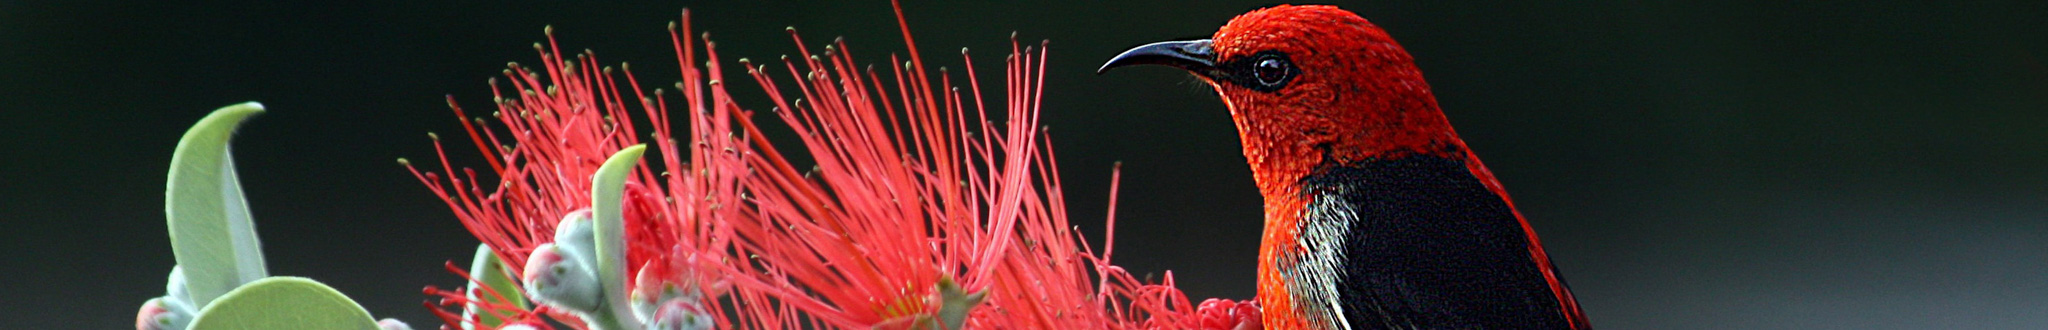 Native honeyeater bird and red wattle. Native wildlife image.